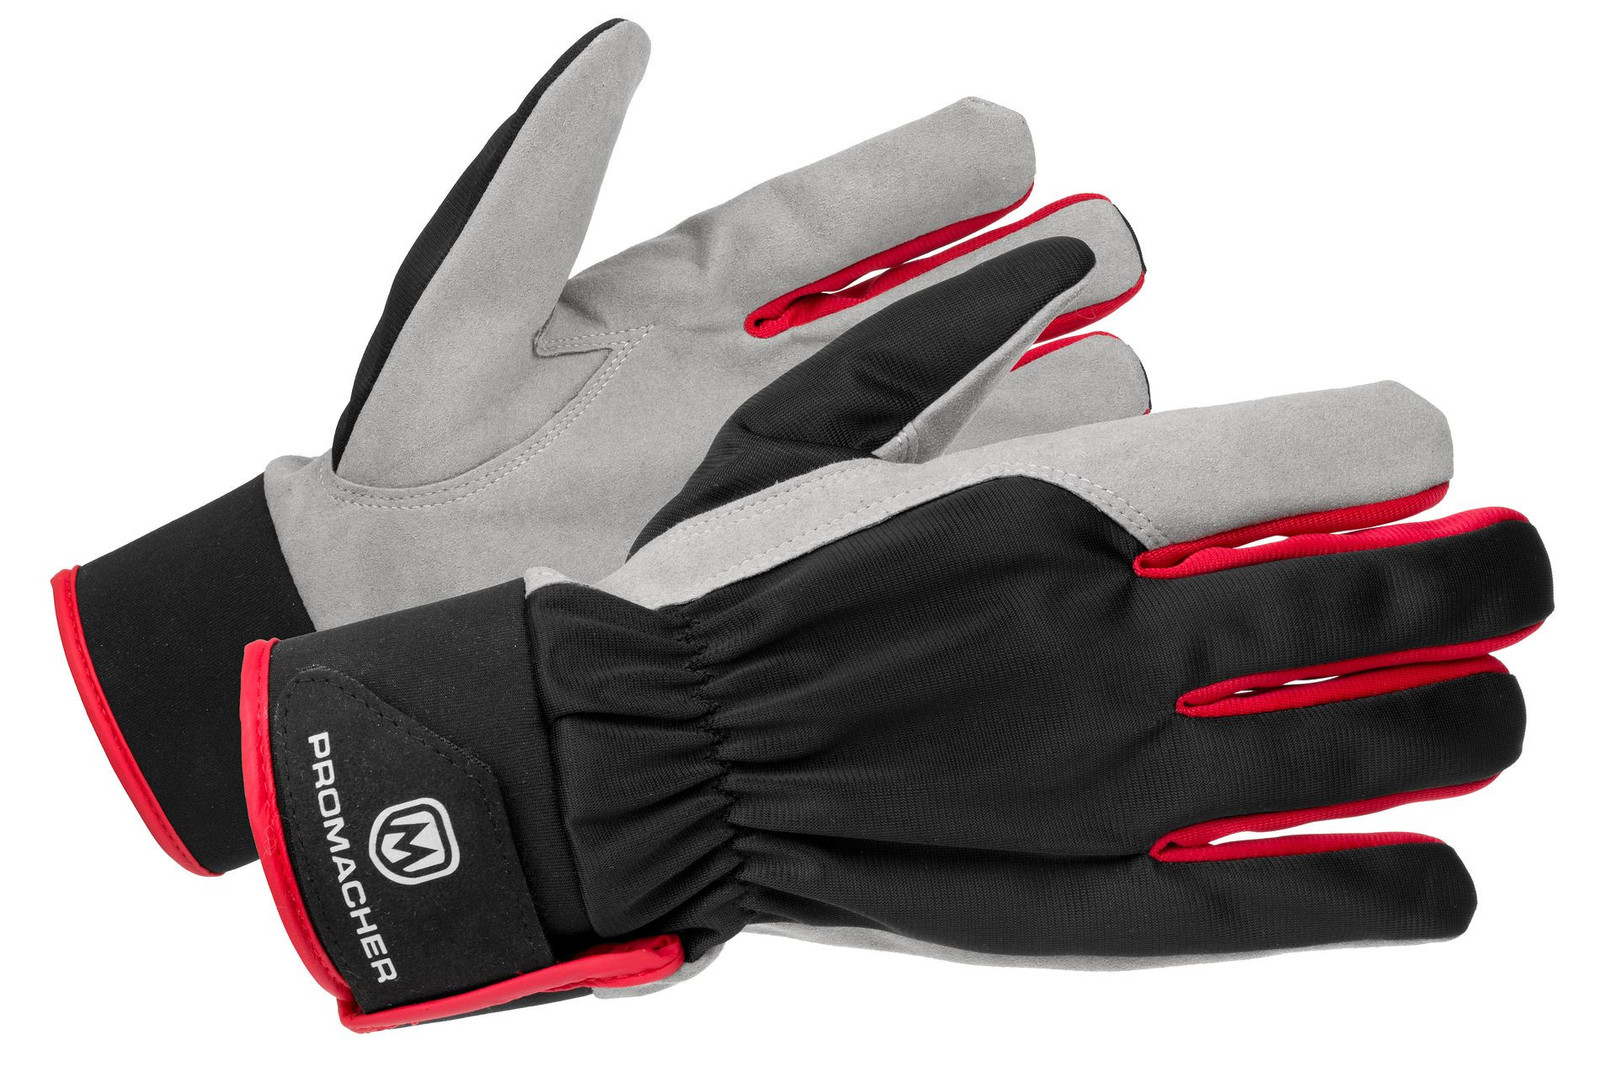 Pracovné rukavice Promacher Carpos Velcro kombinované - veľkosť: 8/M, farba: sivá/červená